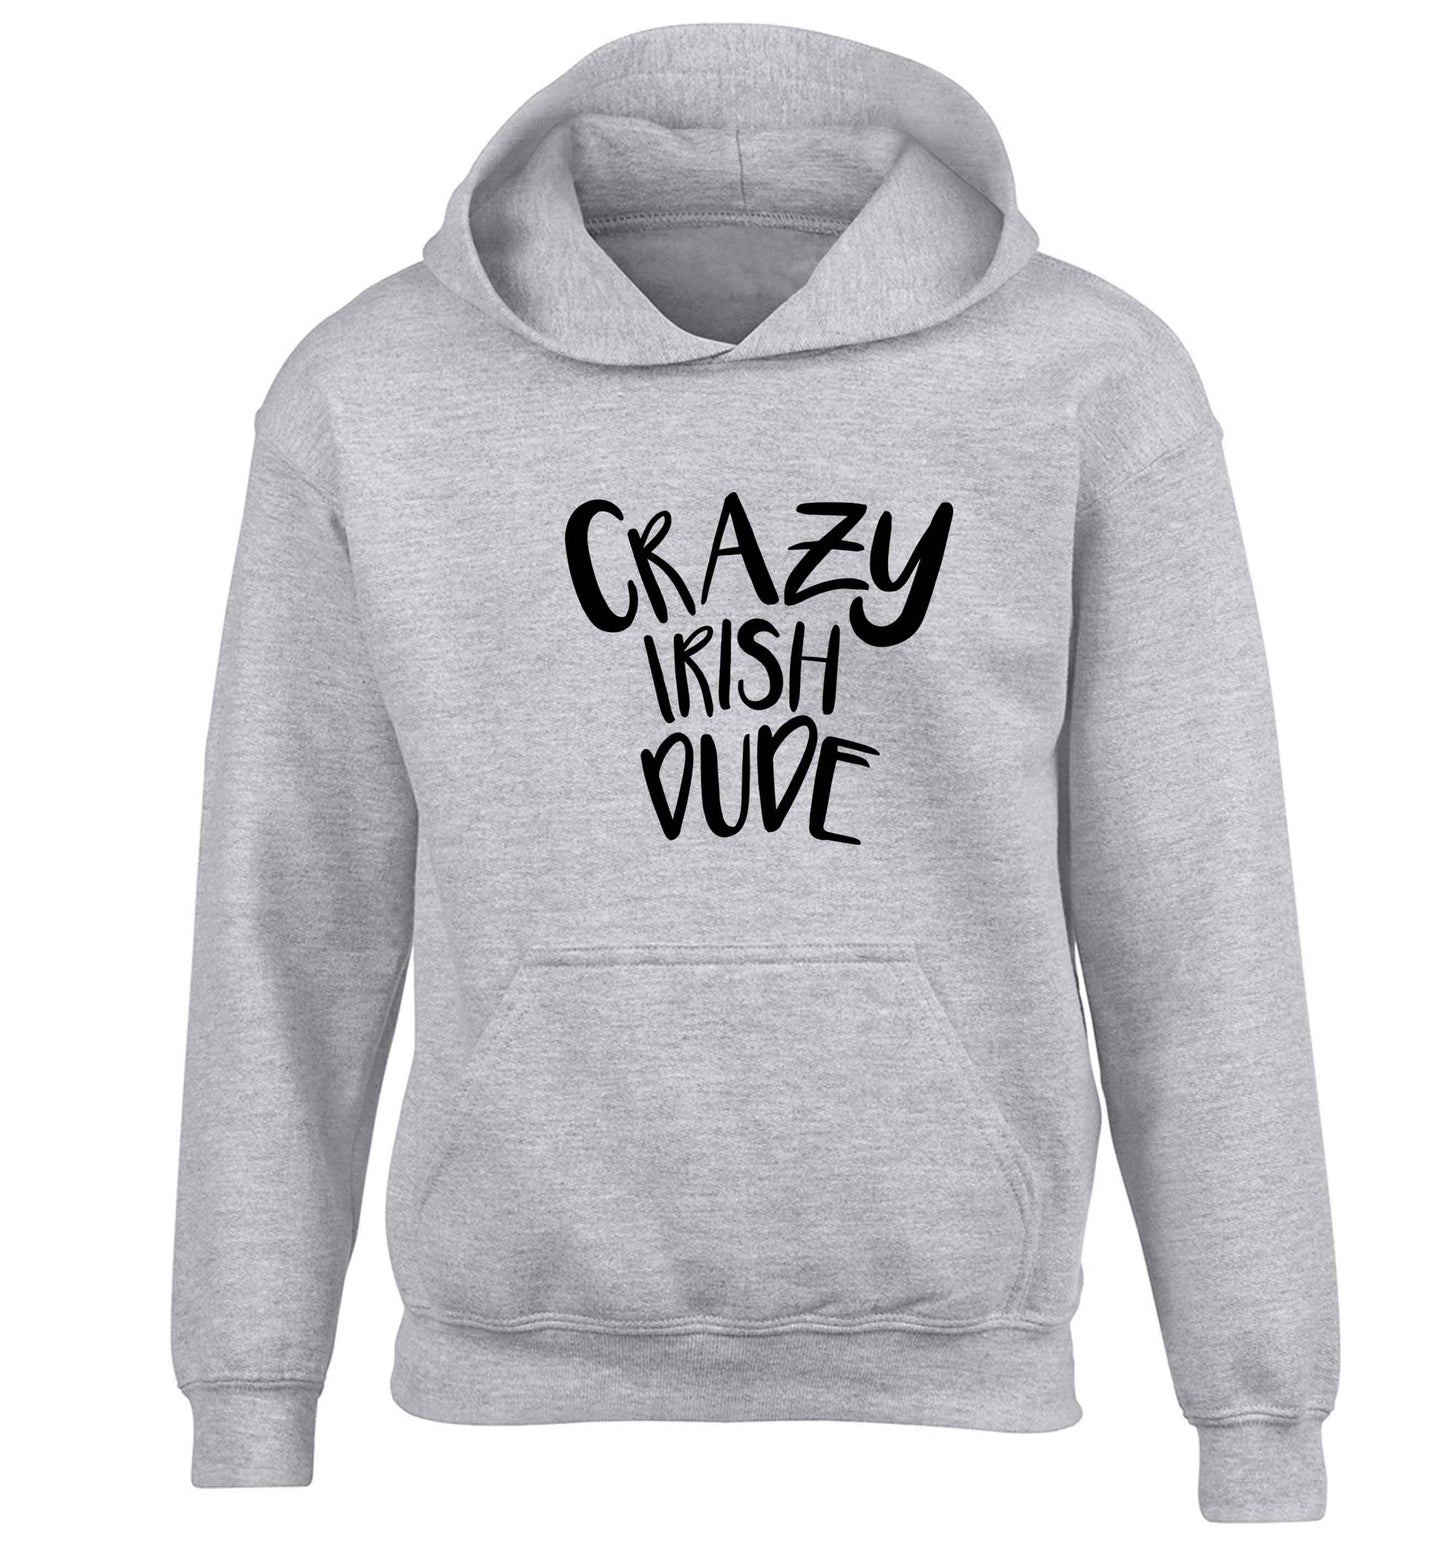 Crazy Irish dude children's grey hoodie 12-13 Years